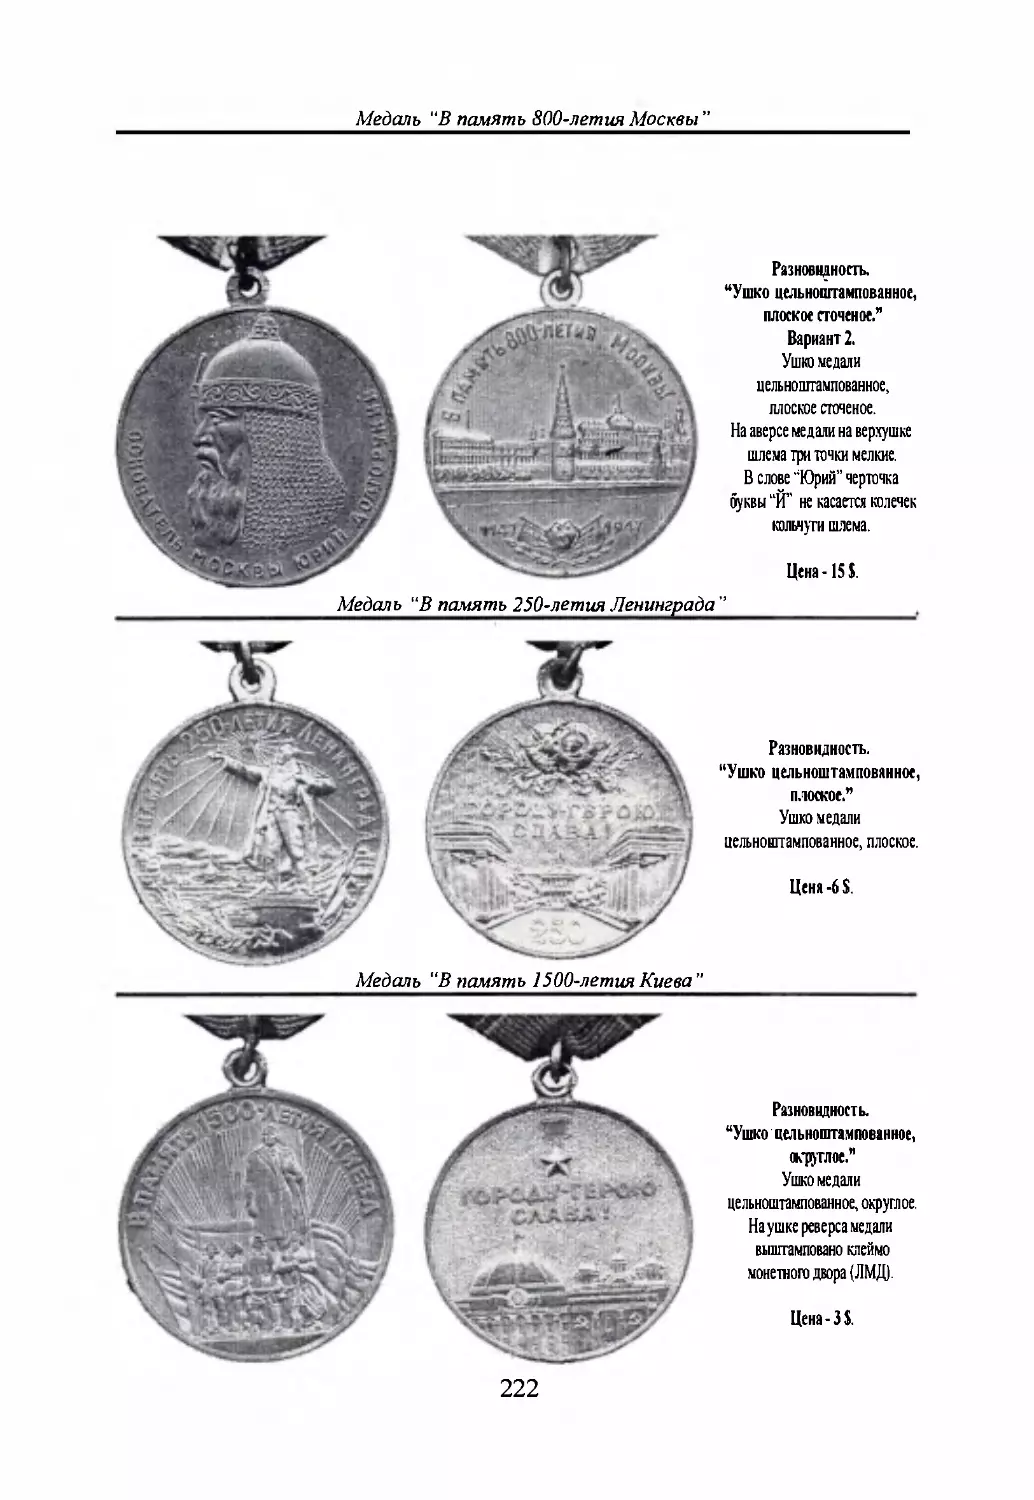 Медаль “В память 250-летия Ленинграда”
Медаль “В память 1500-летия Киева”